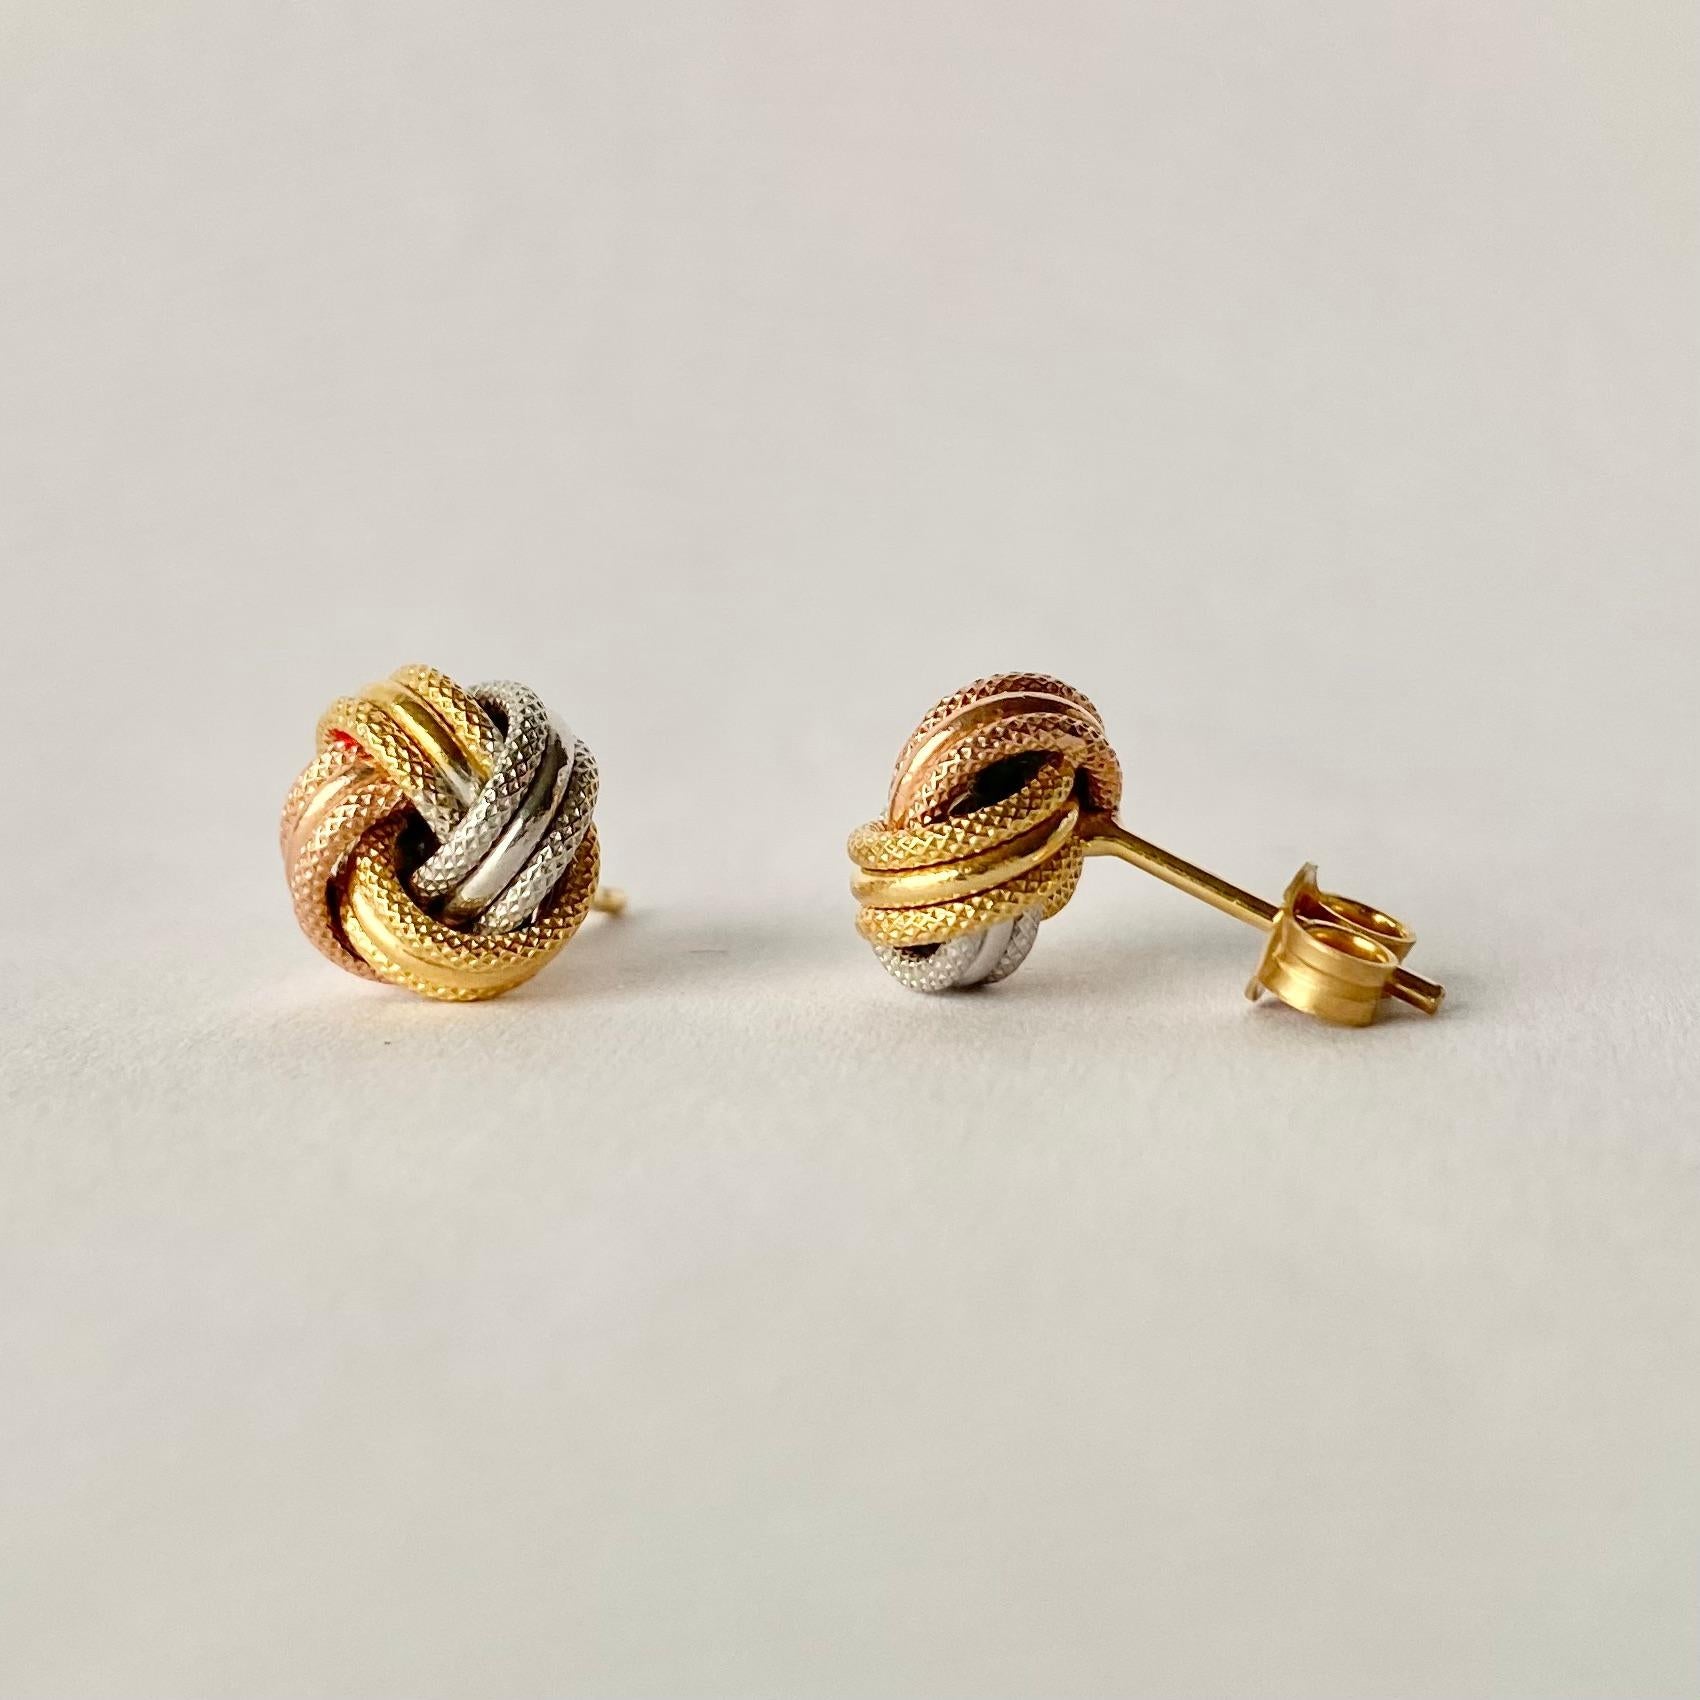 Diese Ohrringe aus glänzendem 9-karätigem Gelb-, Rosé- und Weißgold sind wunderschön verknotet und bieten ein stilvolles Design. 

Knoten-Durchmesser: 9mm
Höhe vom Ohr: 6mm

Gewicht: 0,77g